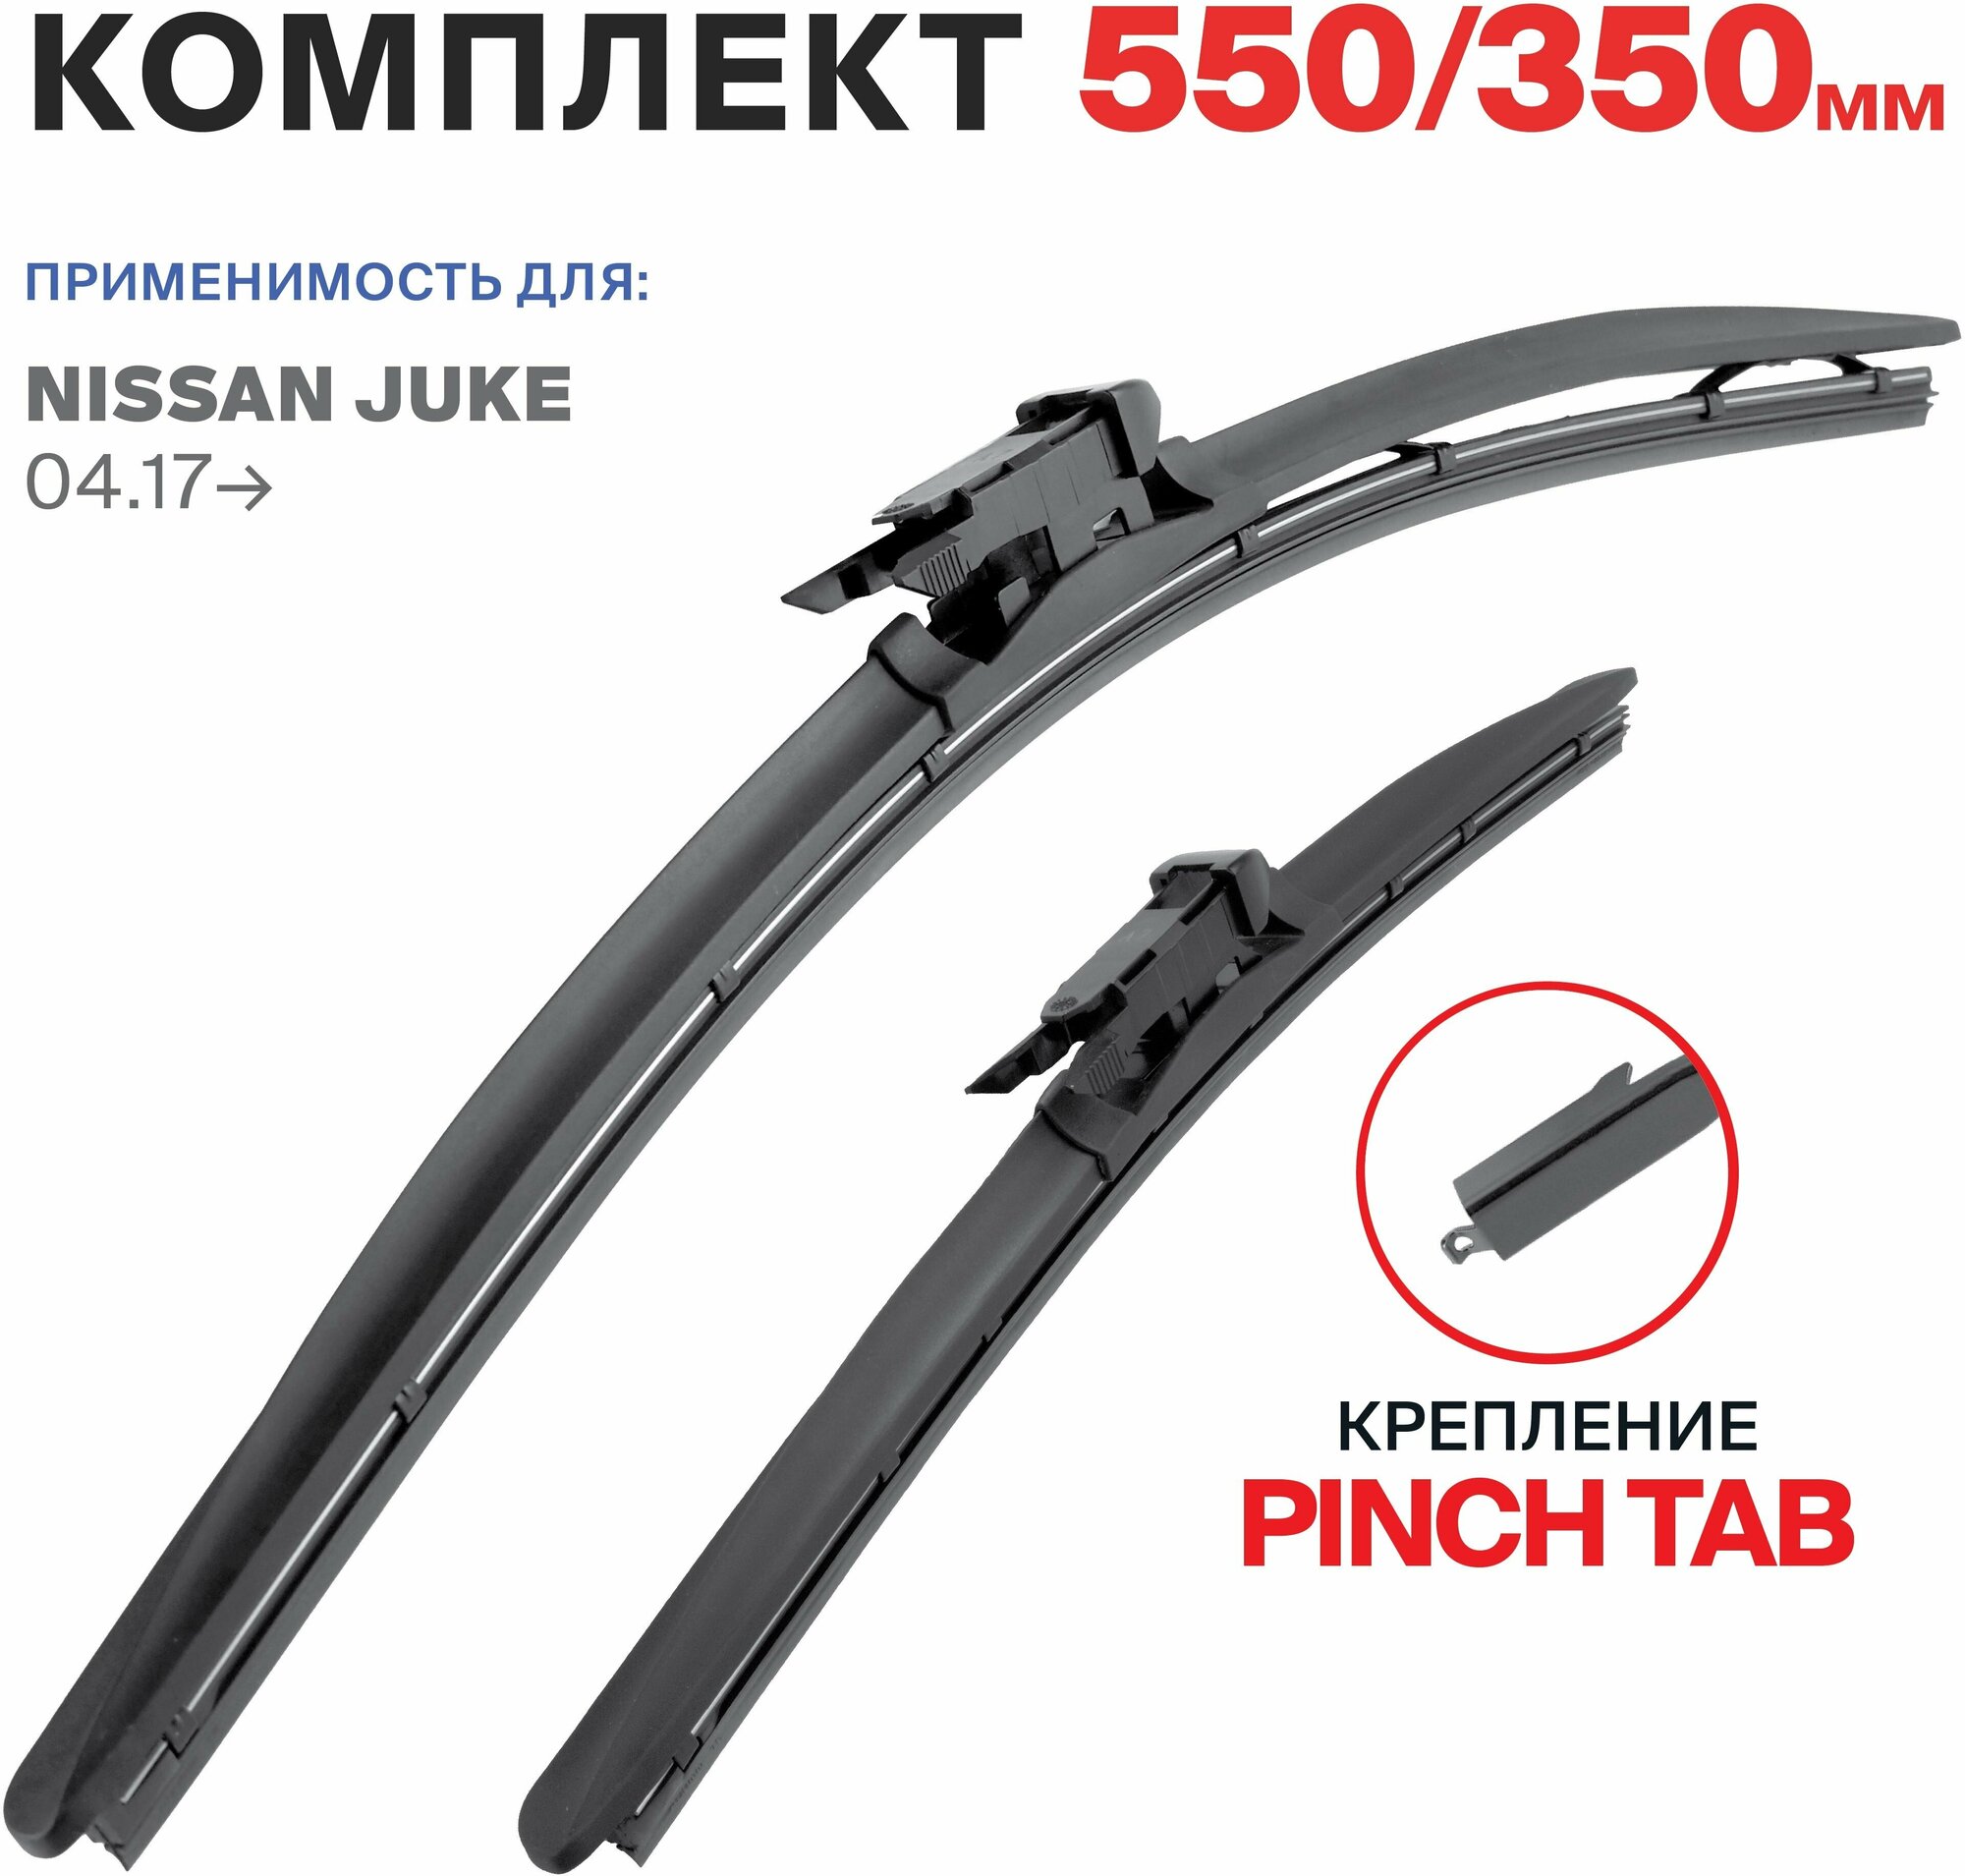 550 350 мм. крепление pinch tab. Щетки стеклоочистителя бескаркасные RD5 Nissan Juke (F15) 04.17-, Ниссан Жук